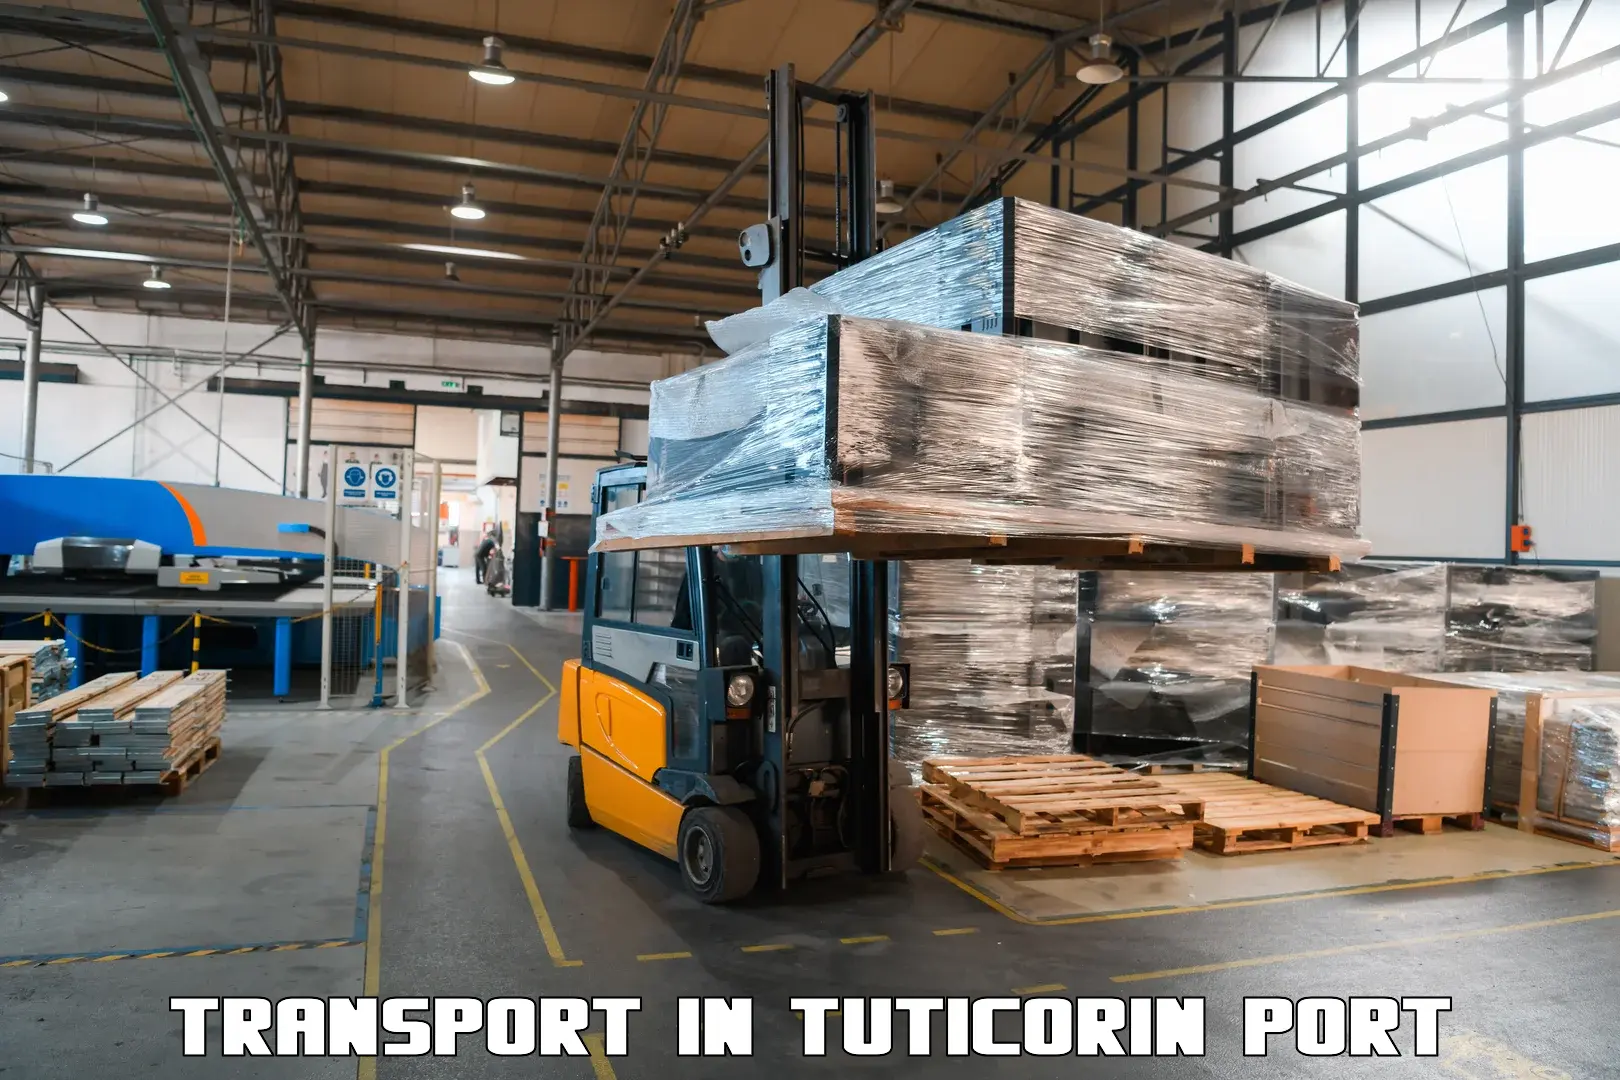 All India transport service in Tuticorin Port